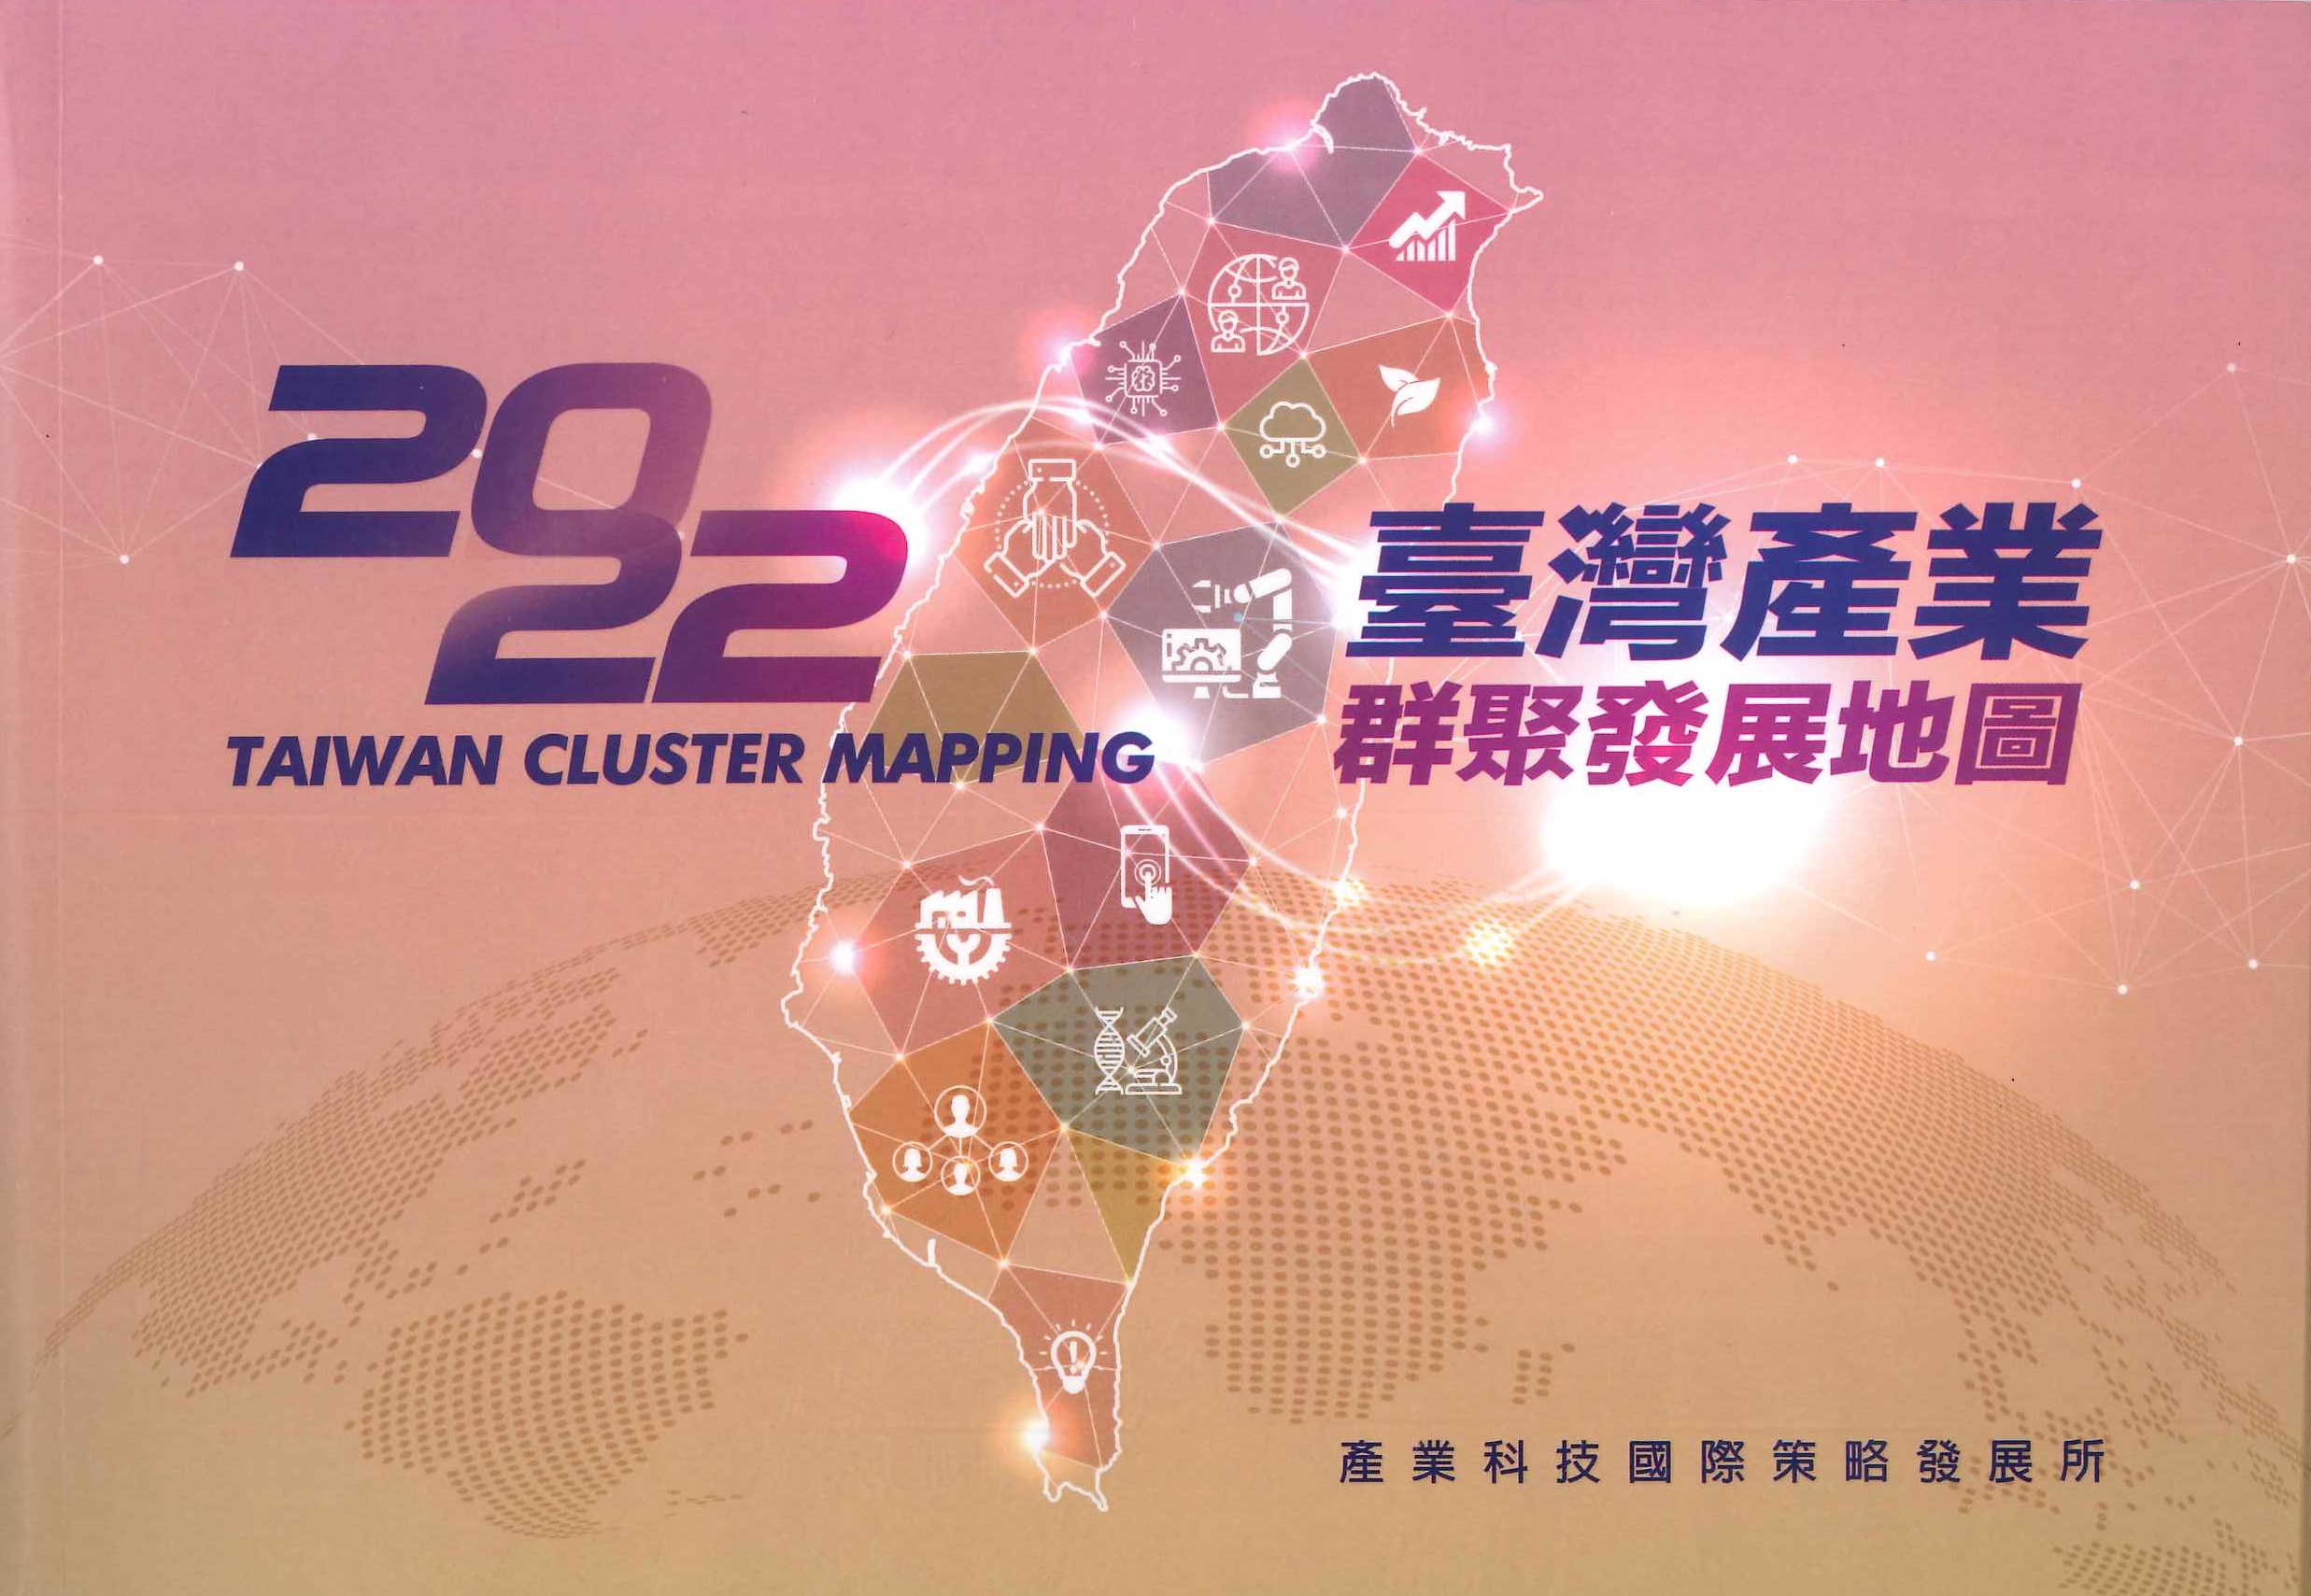 臺灣產業群聚發展地圖=Taiwan cluster mapping